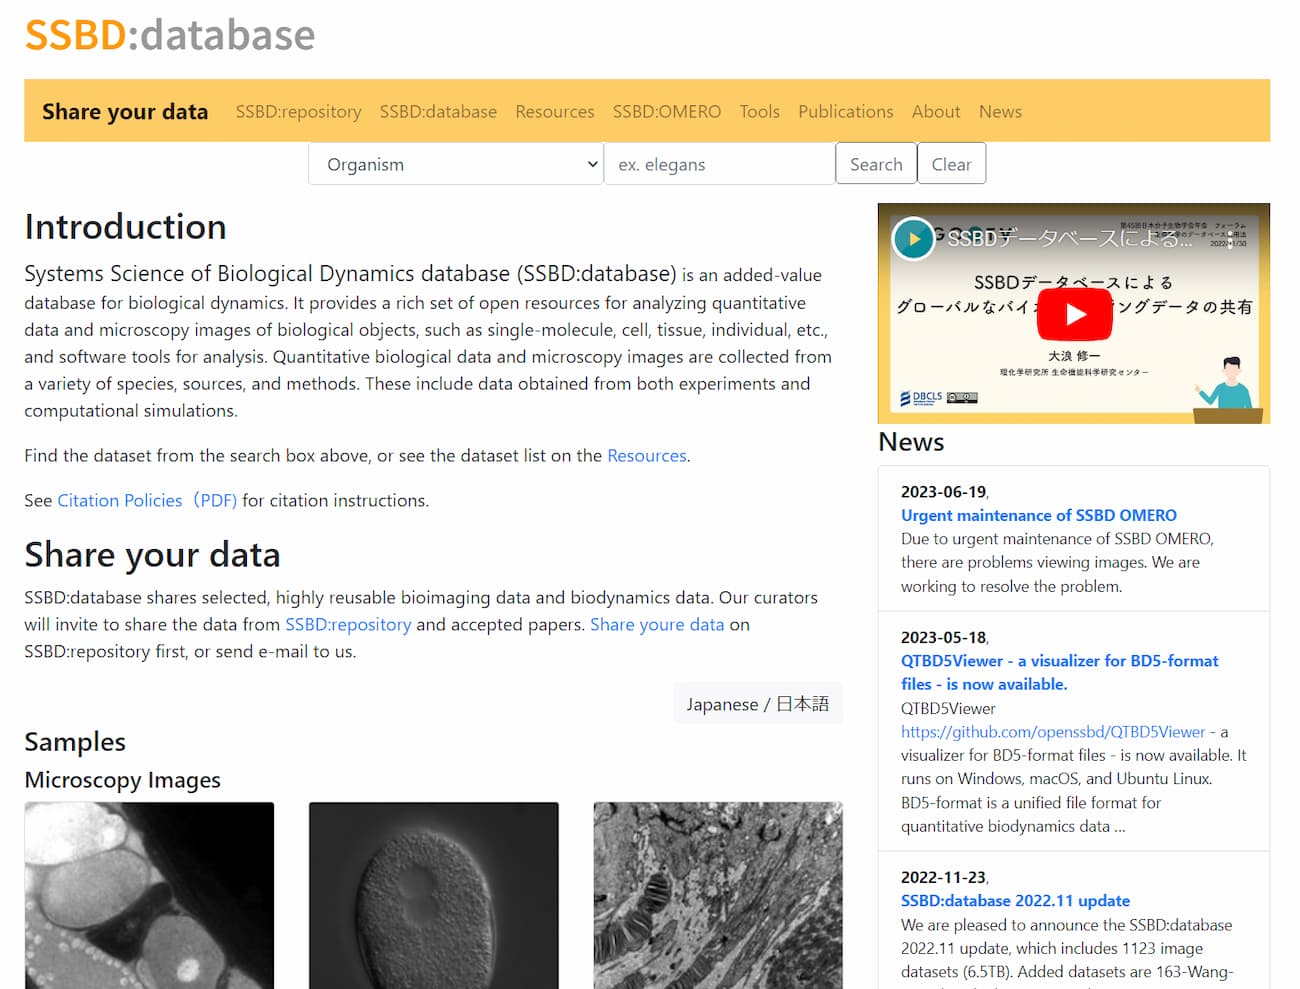 SSBD データベースの画面キャプチャ。SSBDの名称や概要、サンプル画像などが表示されている